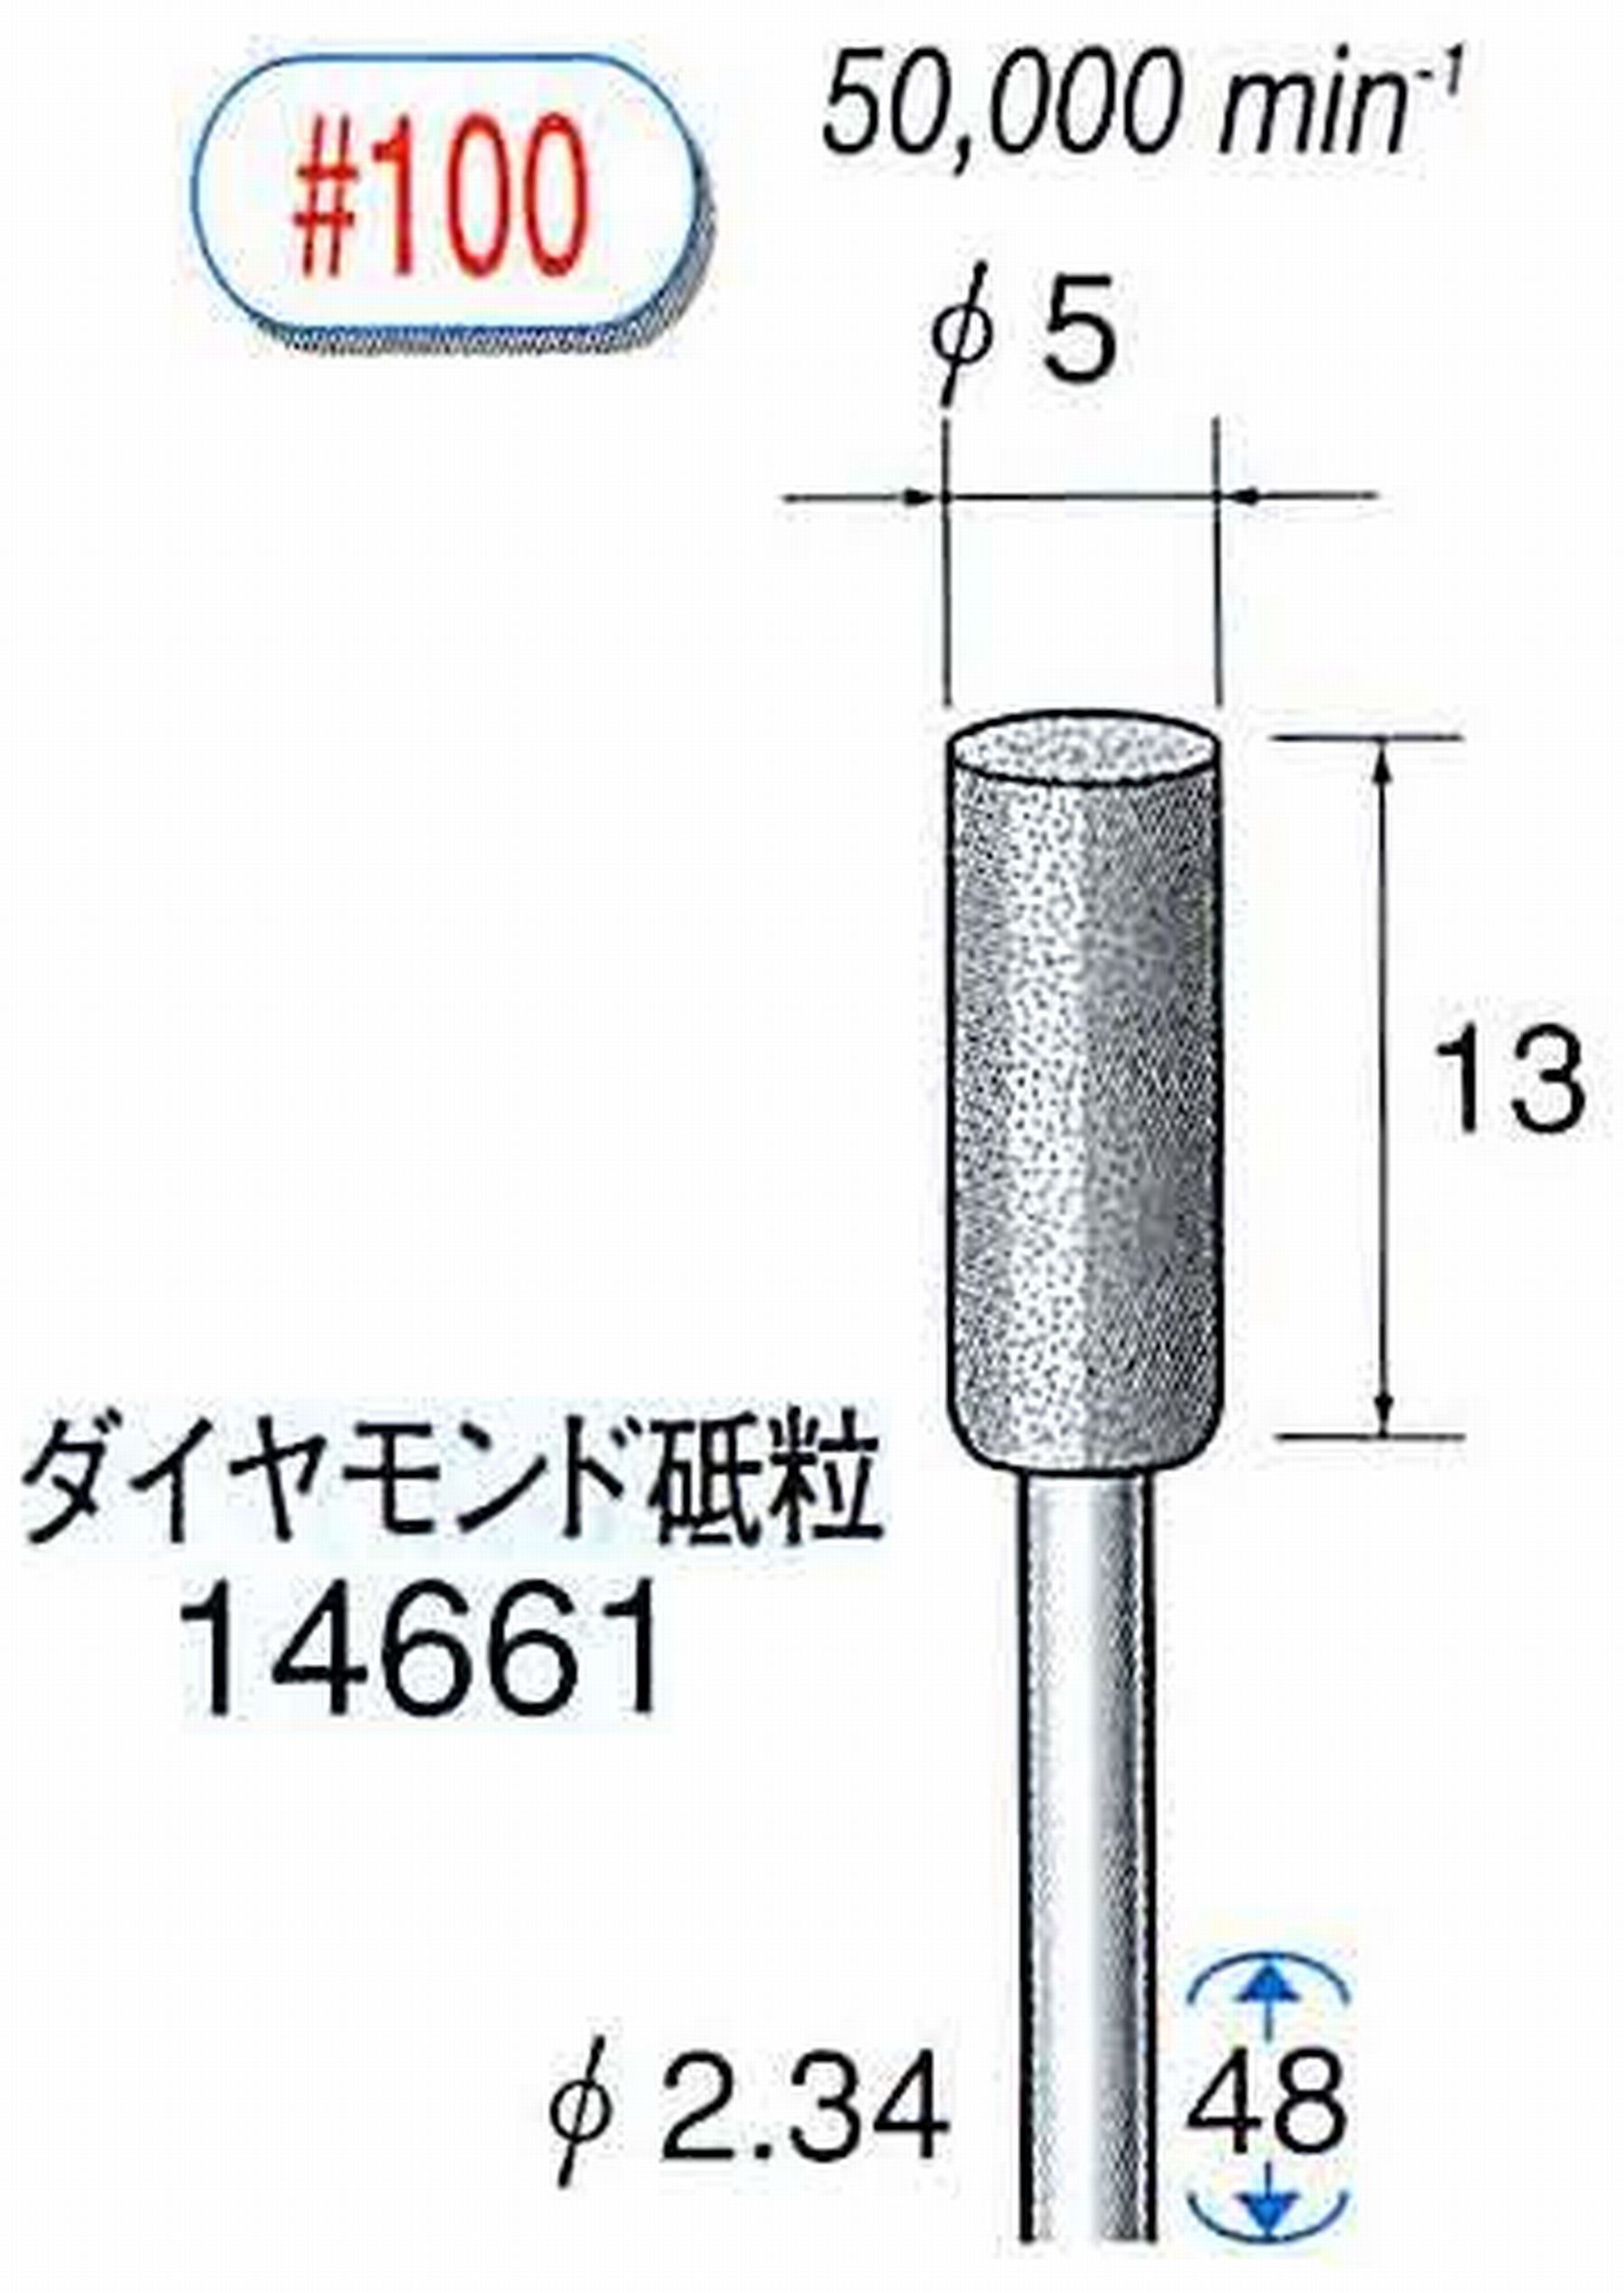 ナカニシ/NAKANISHI ダイヤモンドバー メタルボンドタイプ ダイヤモンド砥粒 軸径(シャンク)φ2.34mm 14661